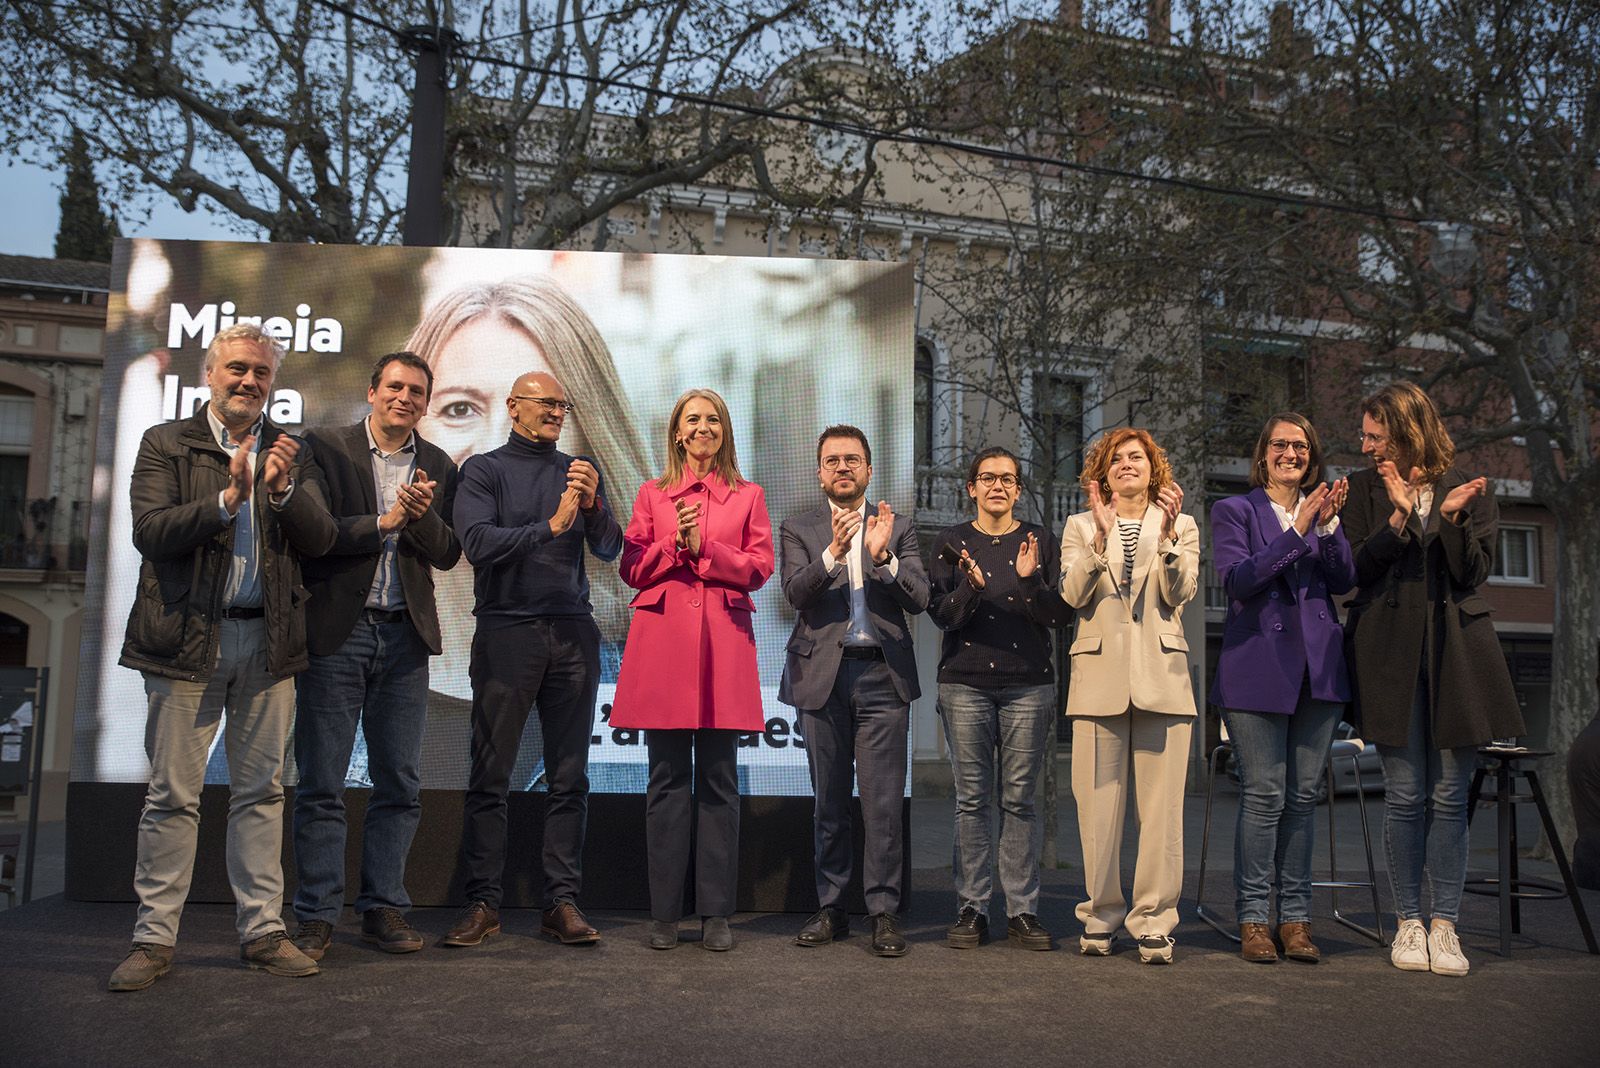 Acte de presentació de Mireia Ingla com a candidata d'ERC a la plaça de Barcelona. FOTO: Bernat Millet.